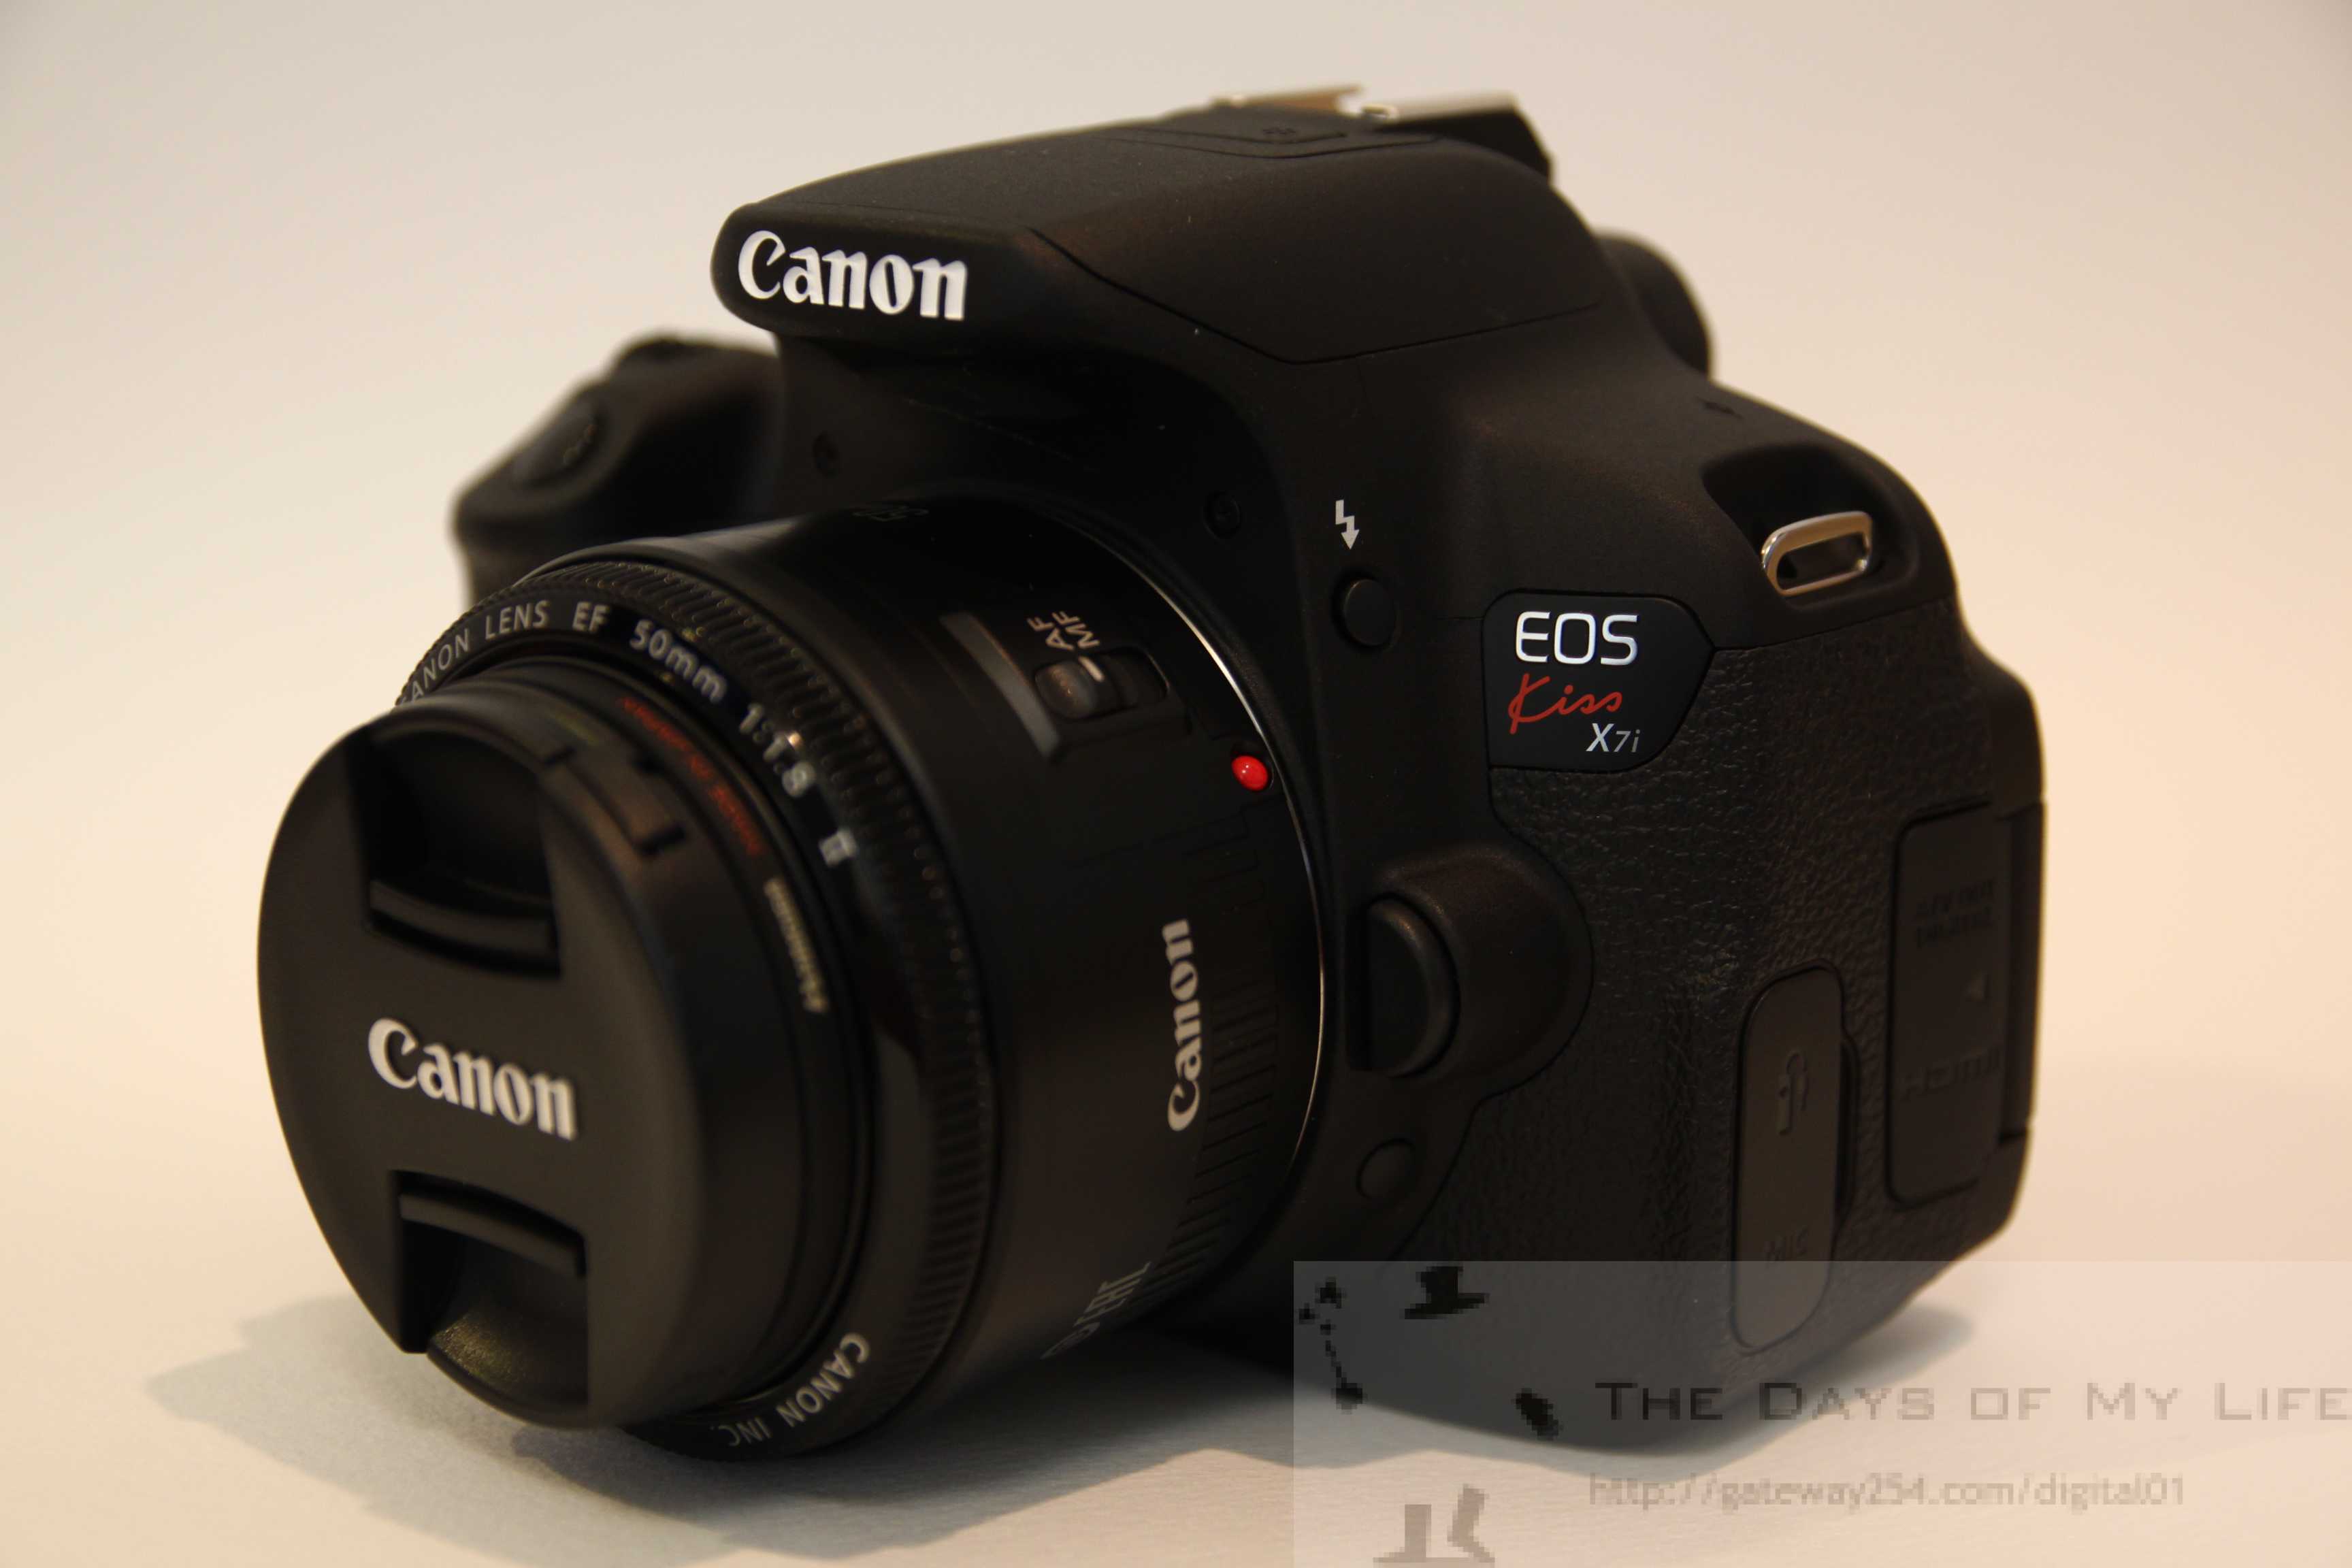 Canon EOS Kiss X7i デジタル一眼レフカメラレビュー | The Days of My Life